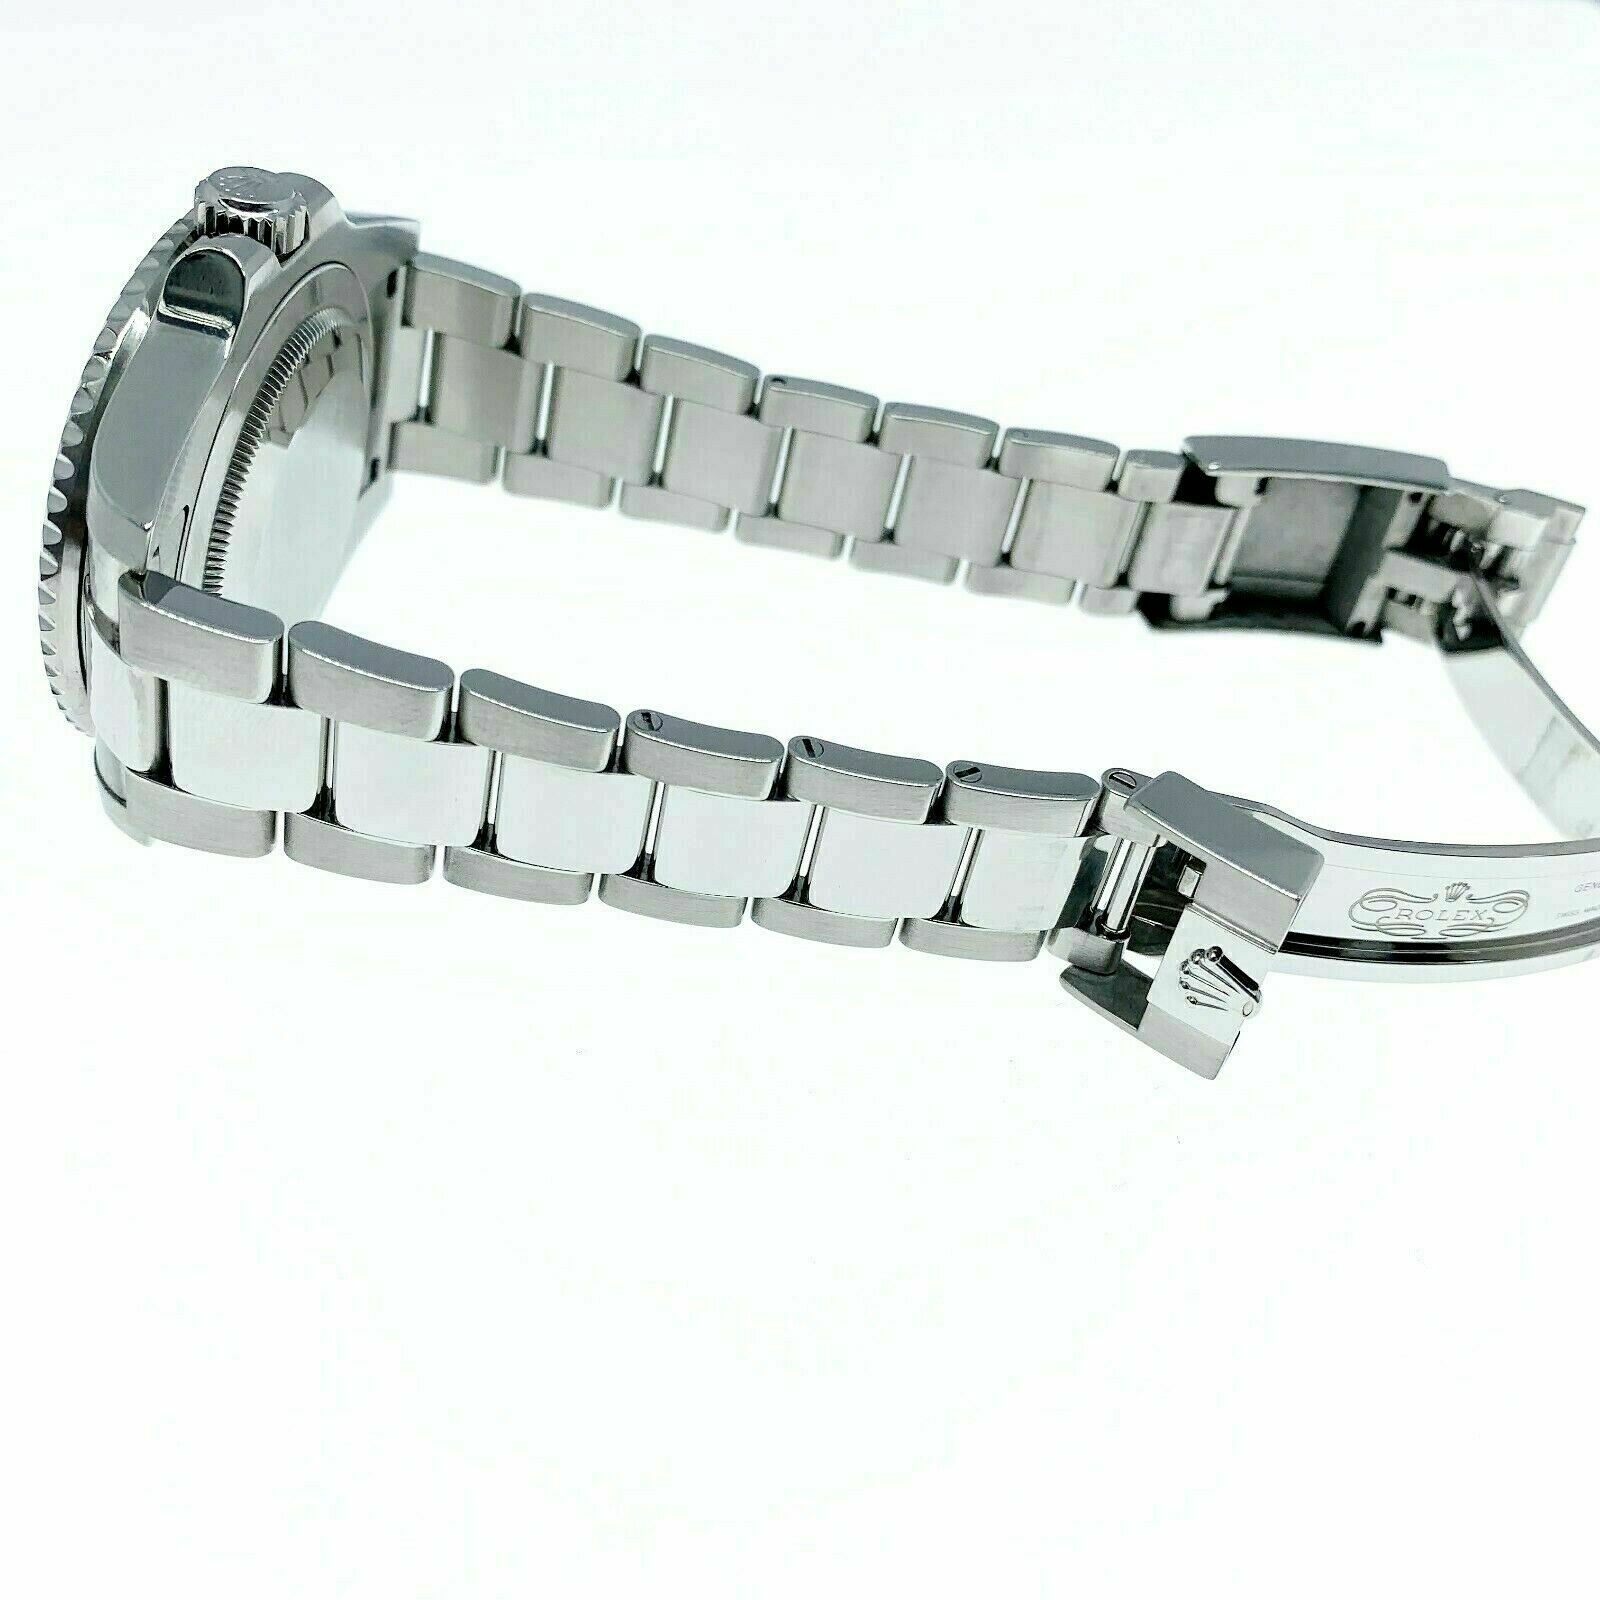 Rolex Ceramic GMT Master II Stainless Steel Watch 40MM Ref 116710 Scrambled